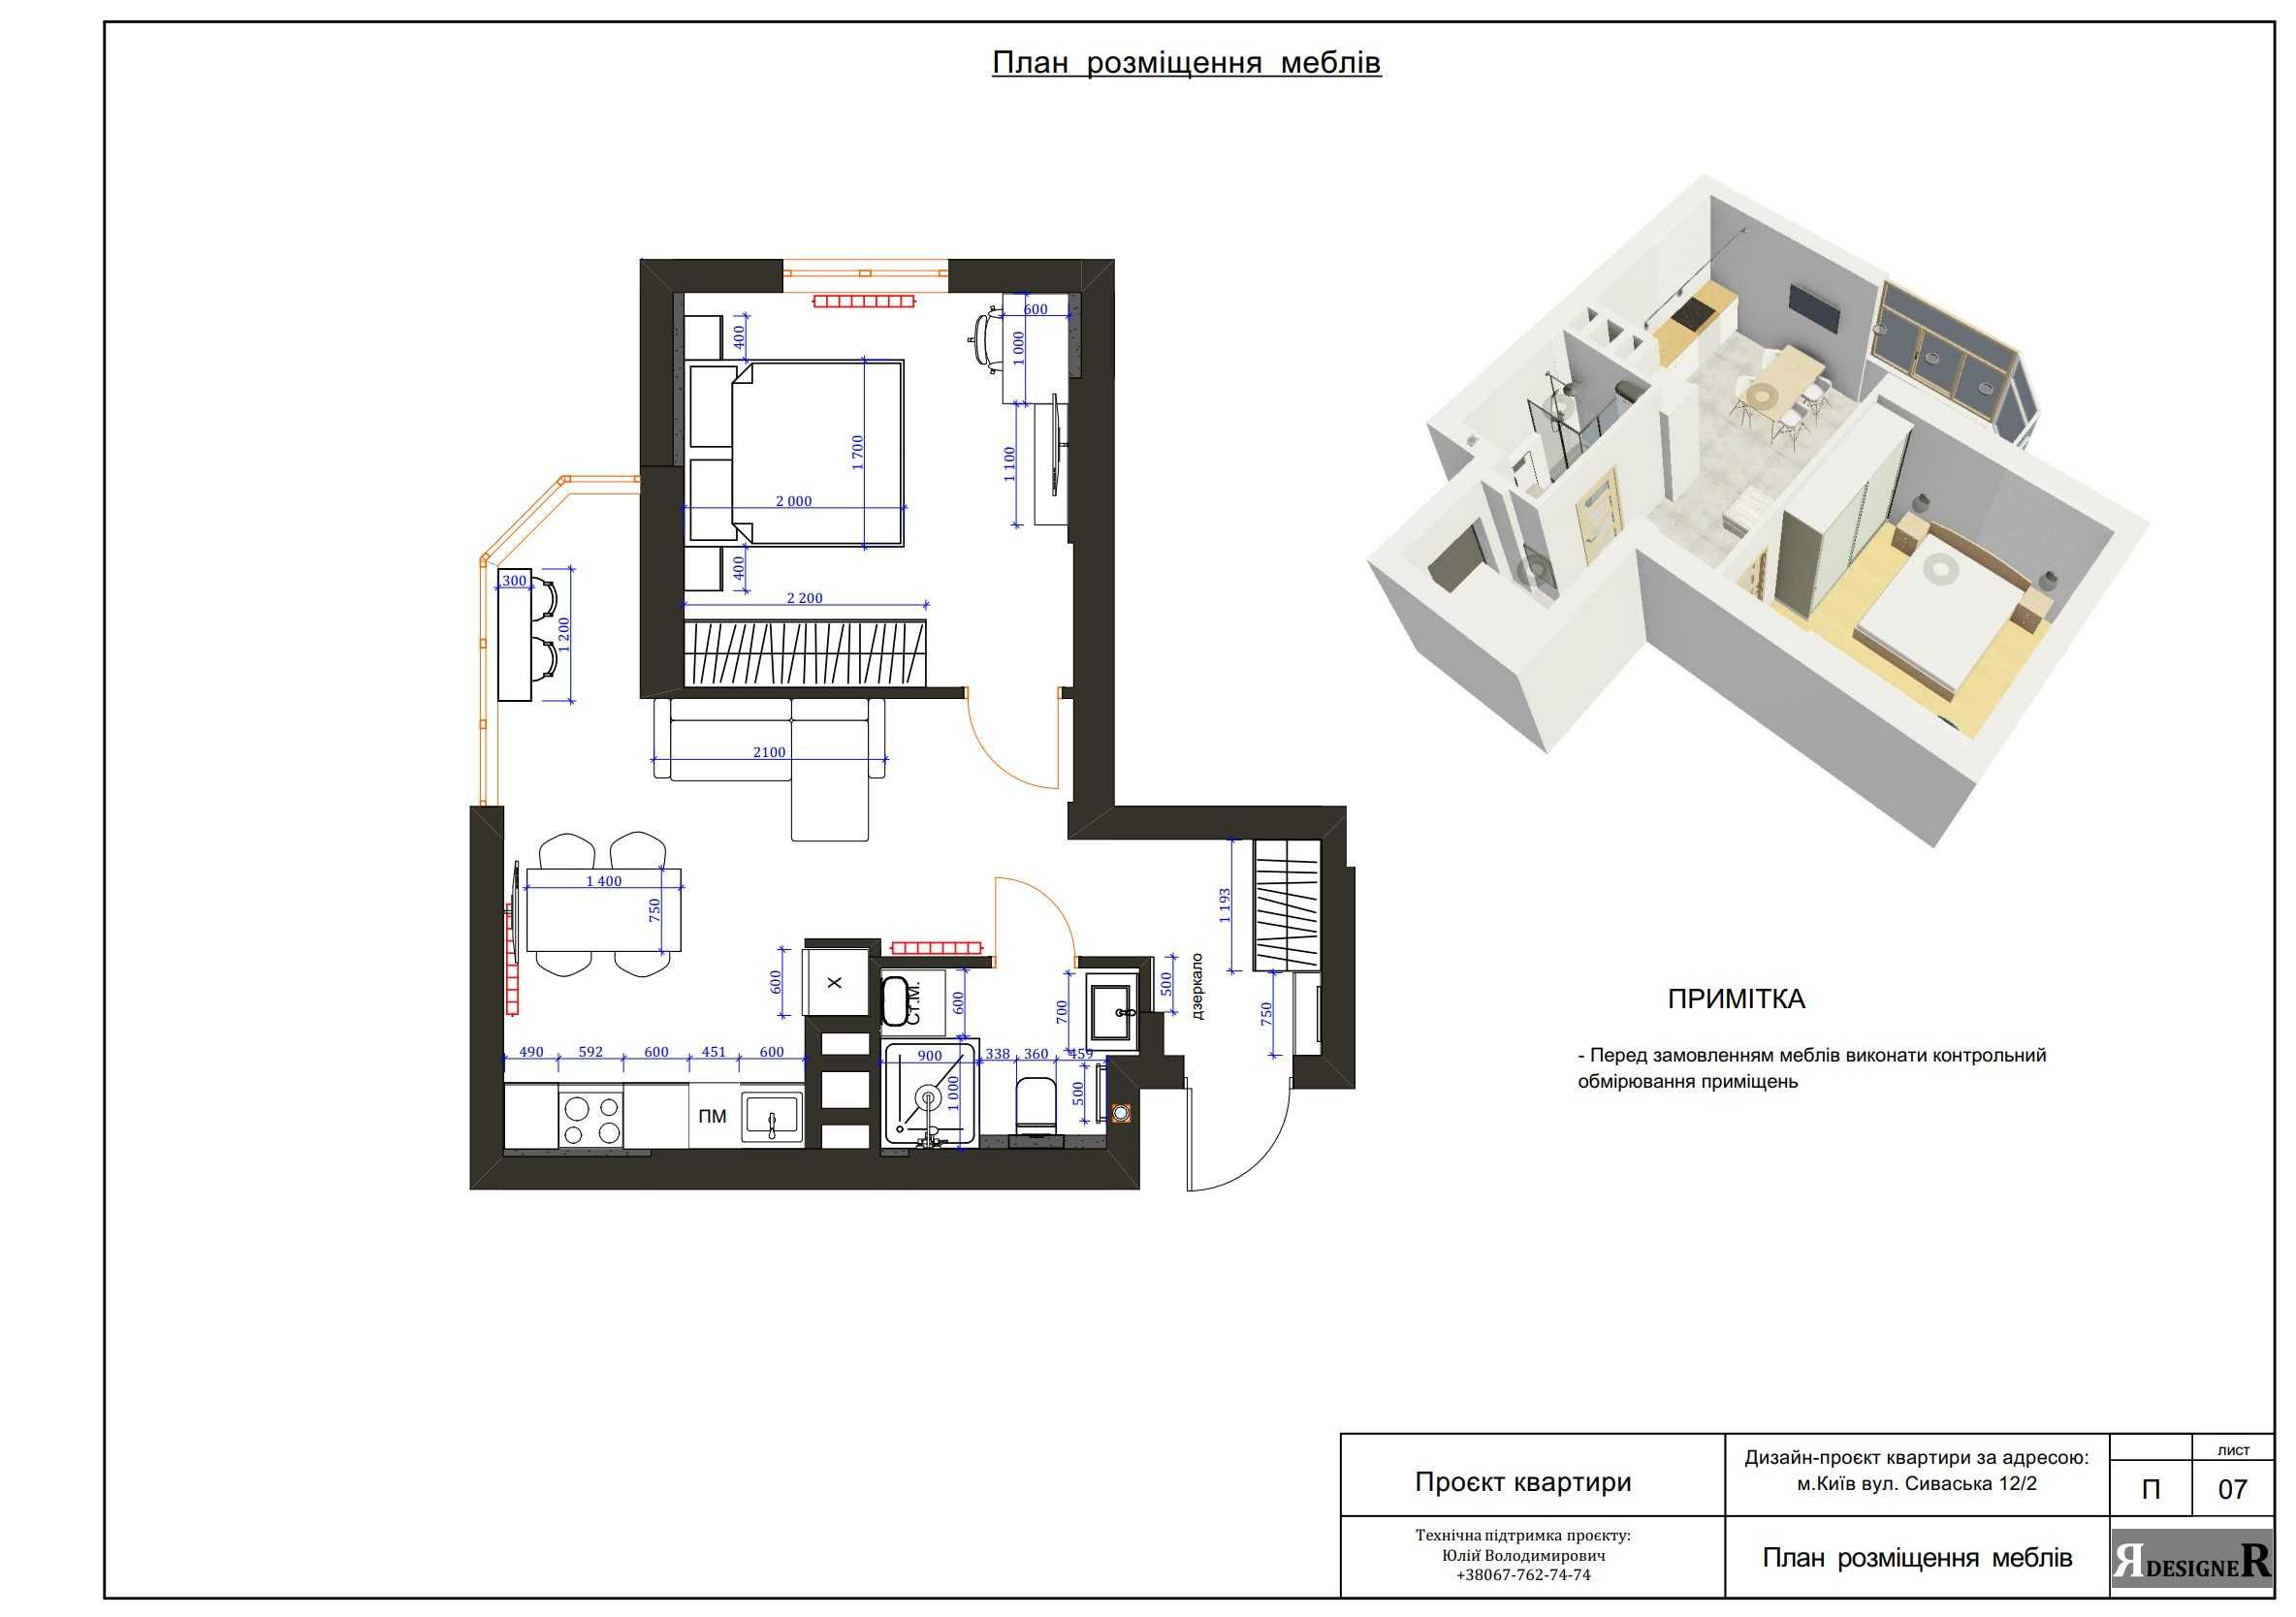 Дизайн-проект технічний: квартира, дім, офіс  190 грн/м2.